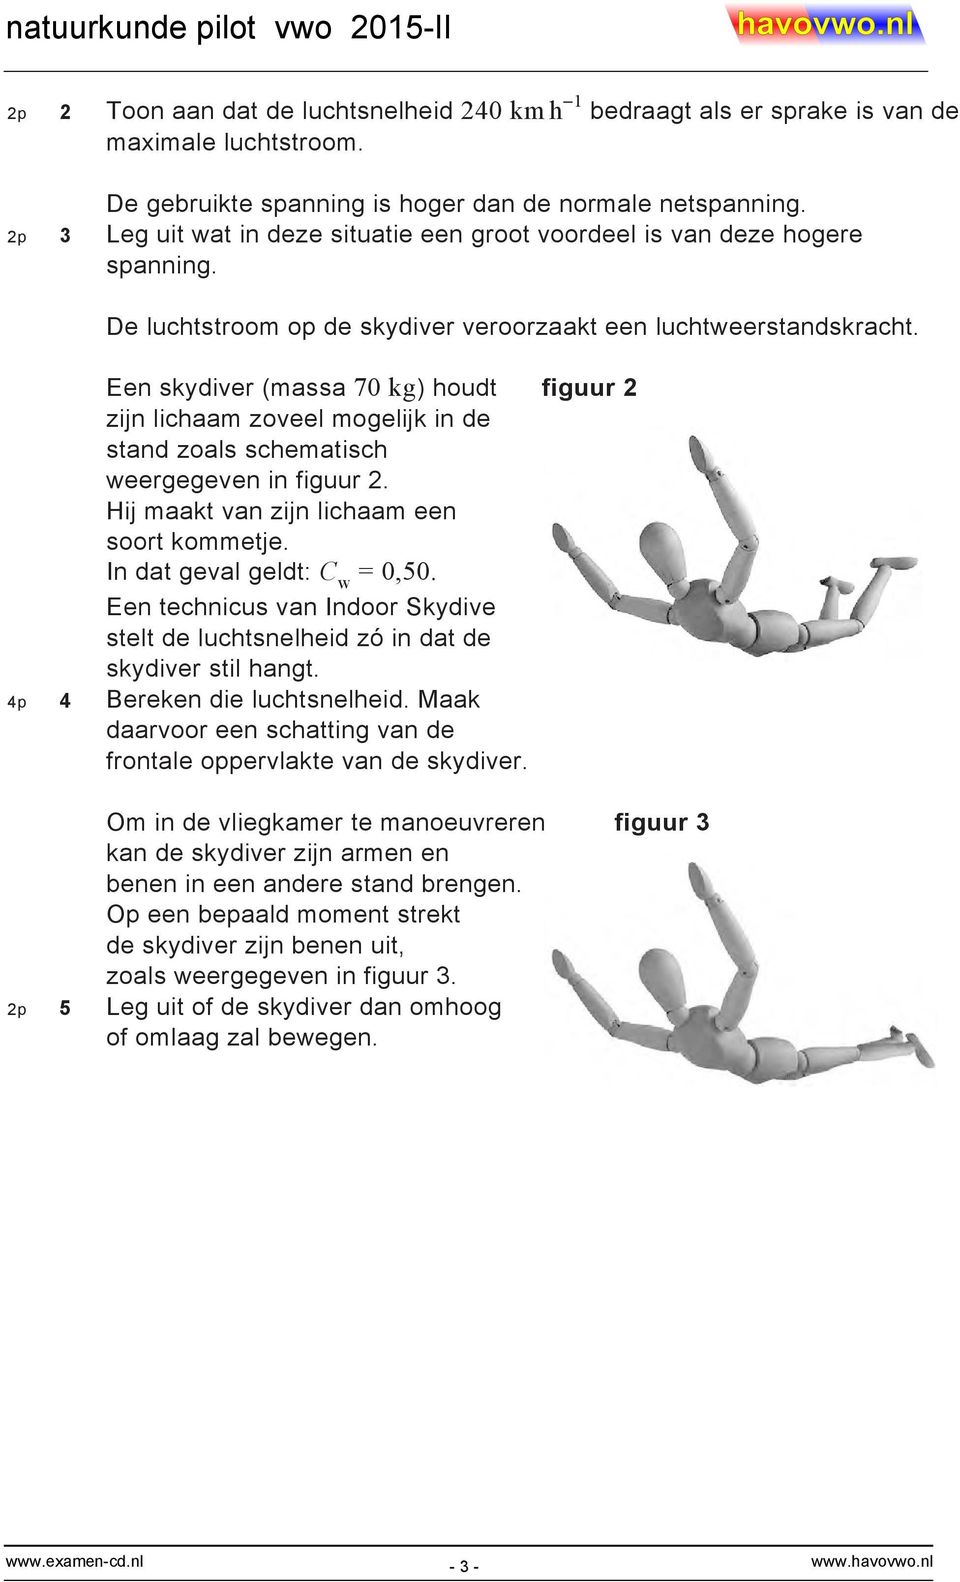 Een skydiver (massa 70 kg) houdt figuur 2 zijn lichaam zoveel mogelijk in de stand zoals schematisch weergegeven in figuur 2. Hij maakt van zijn lichaam een soort kommetje.